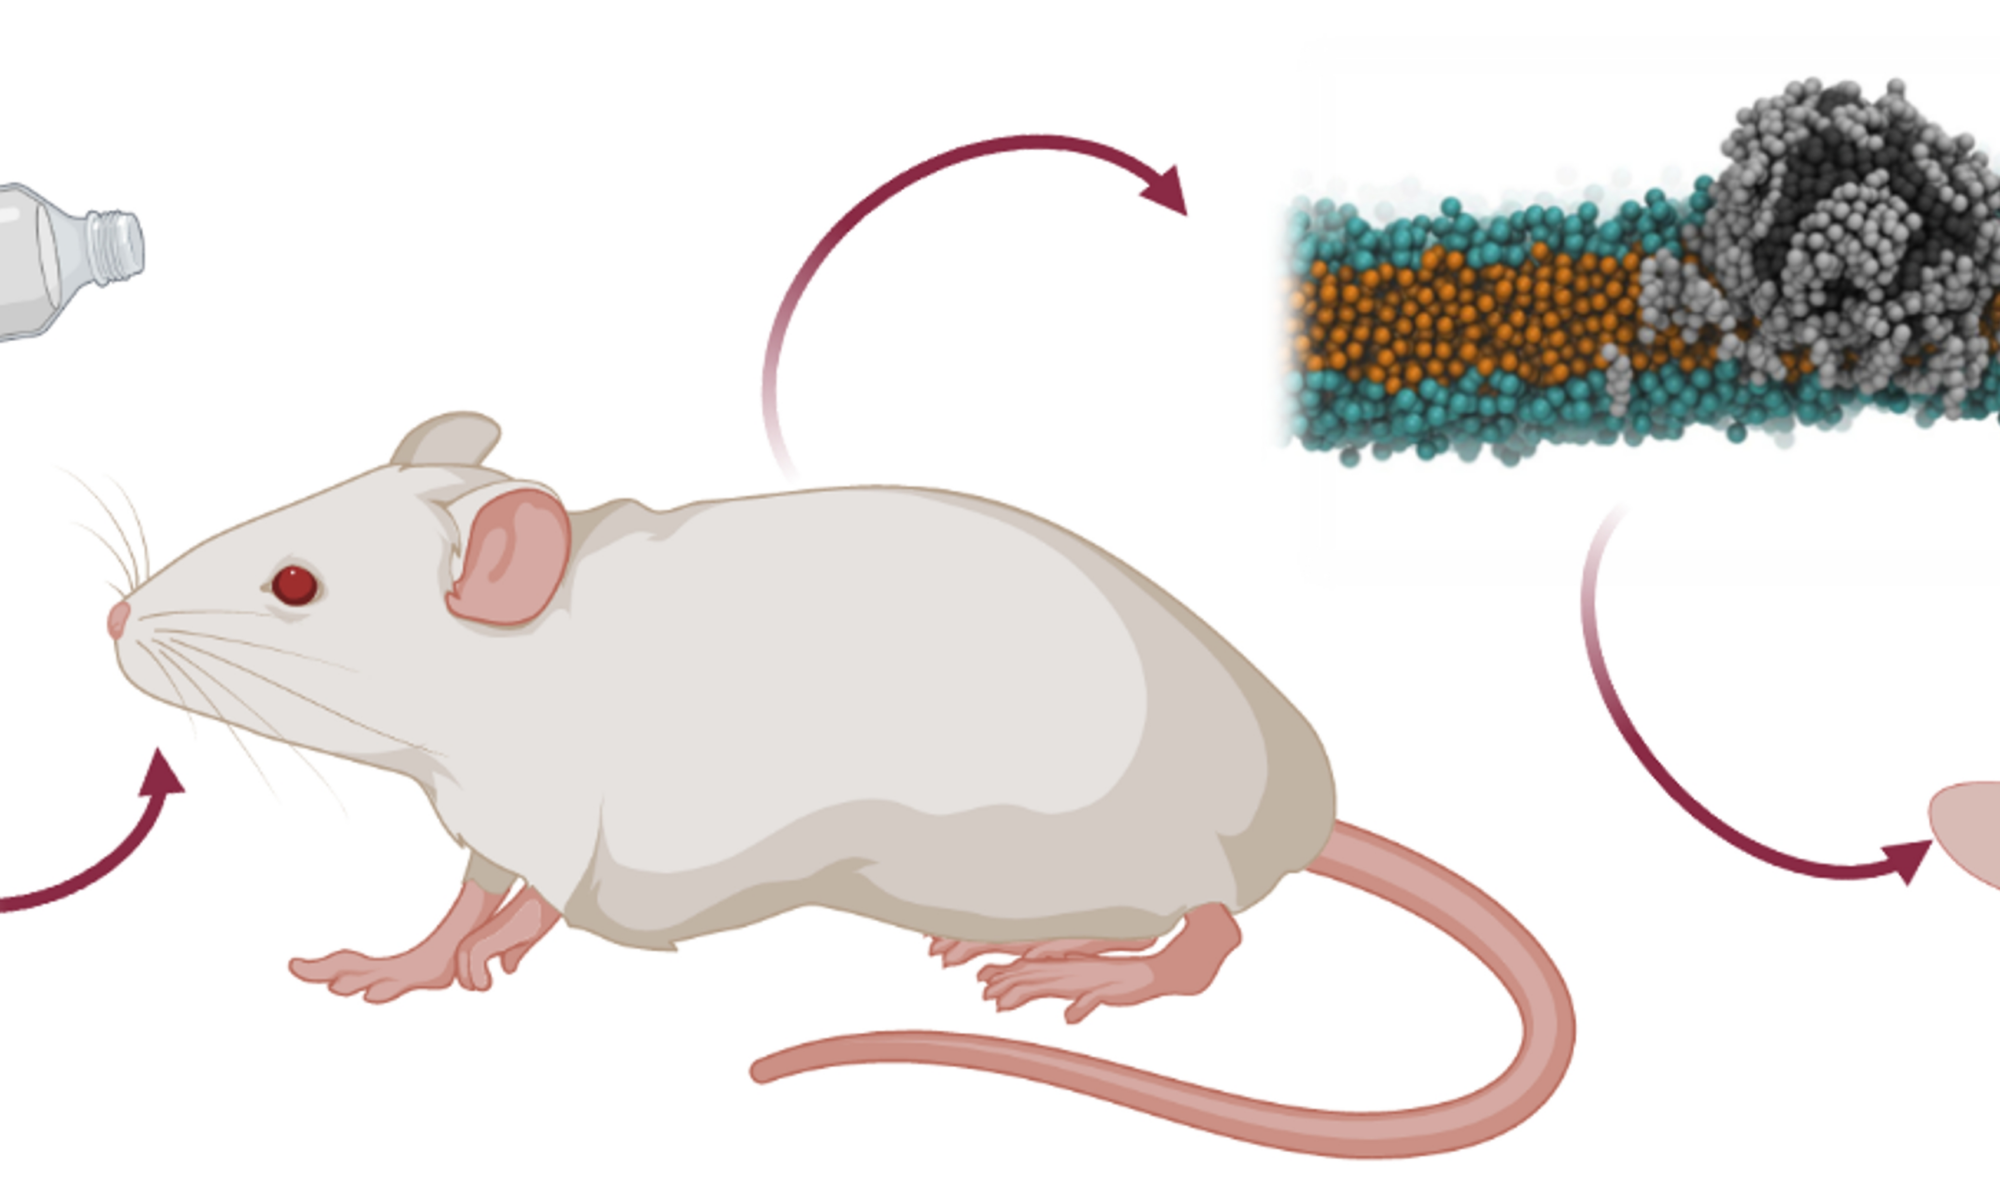 Científicos encuentran partículas de plástico en cerebros de ratones pocas horas después de ingerirlas